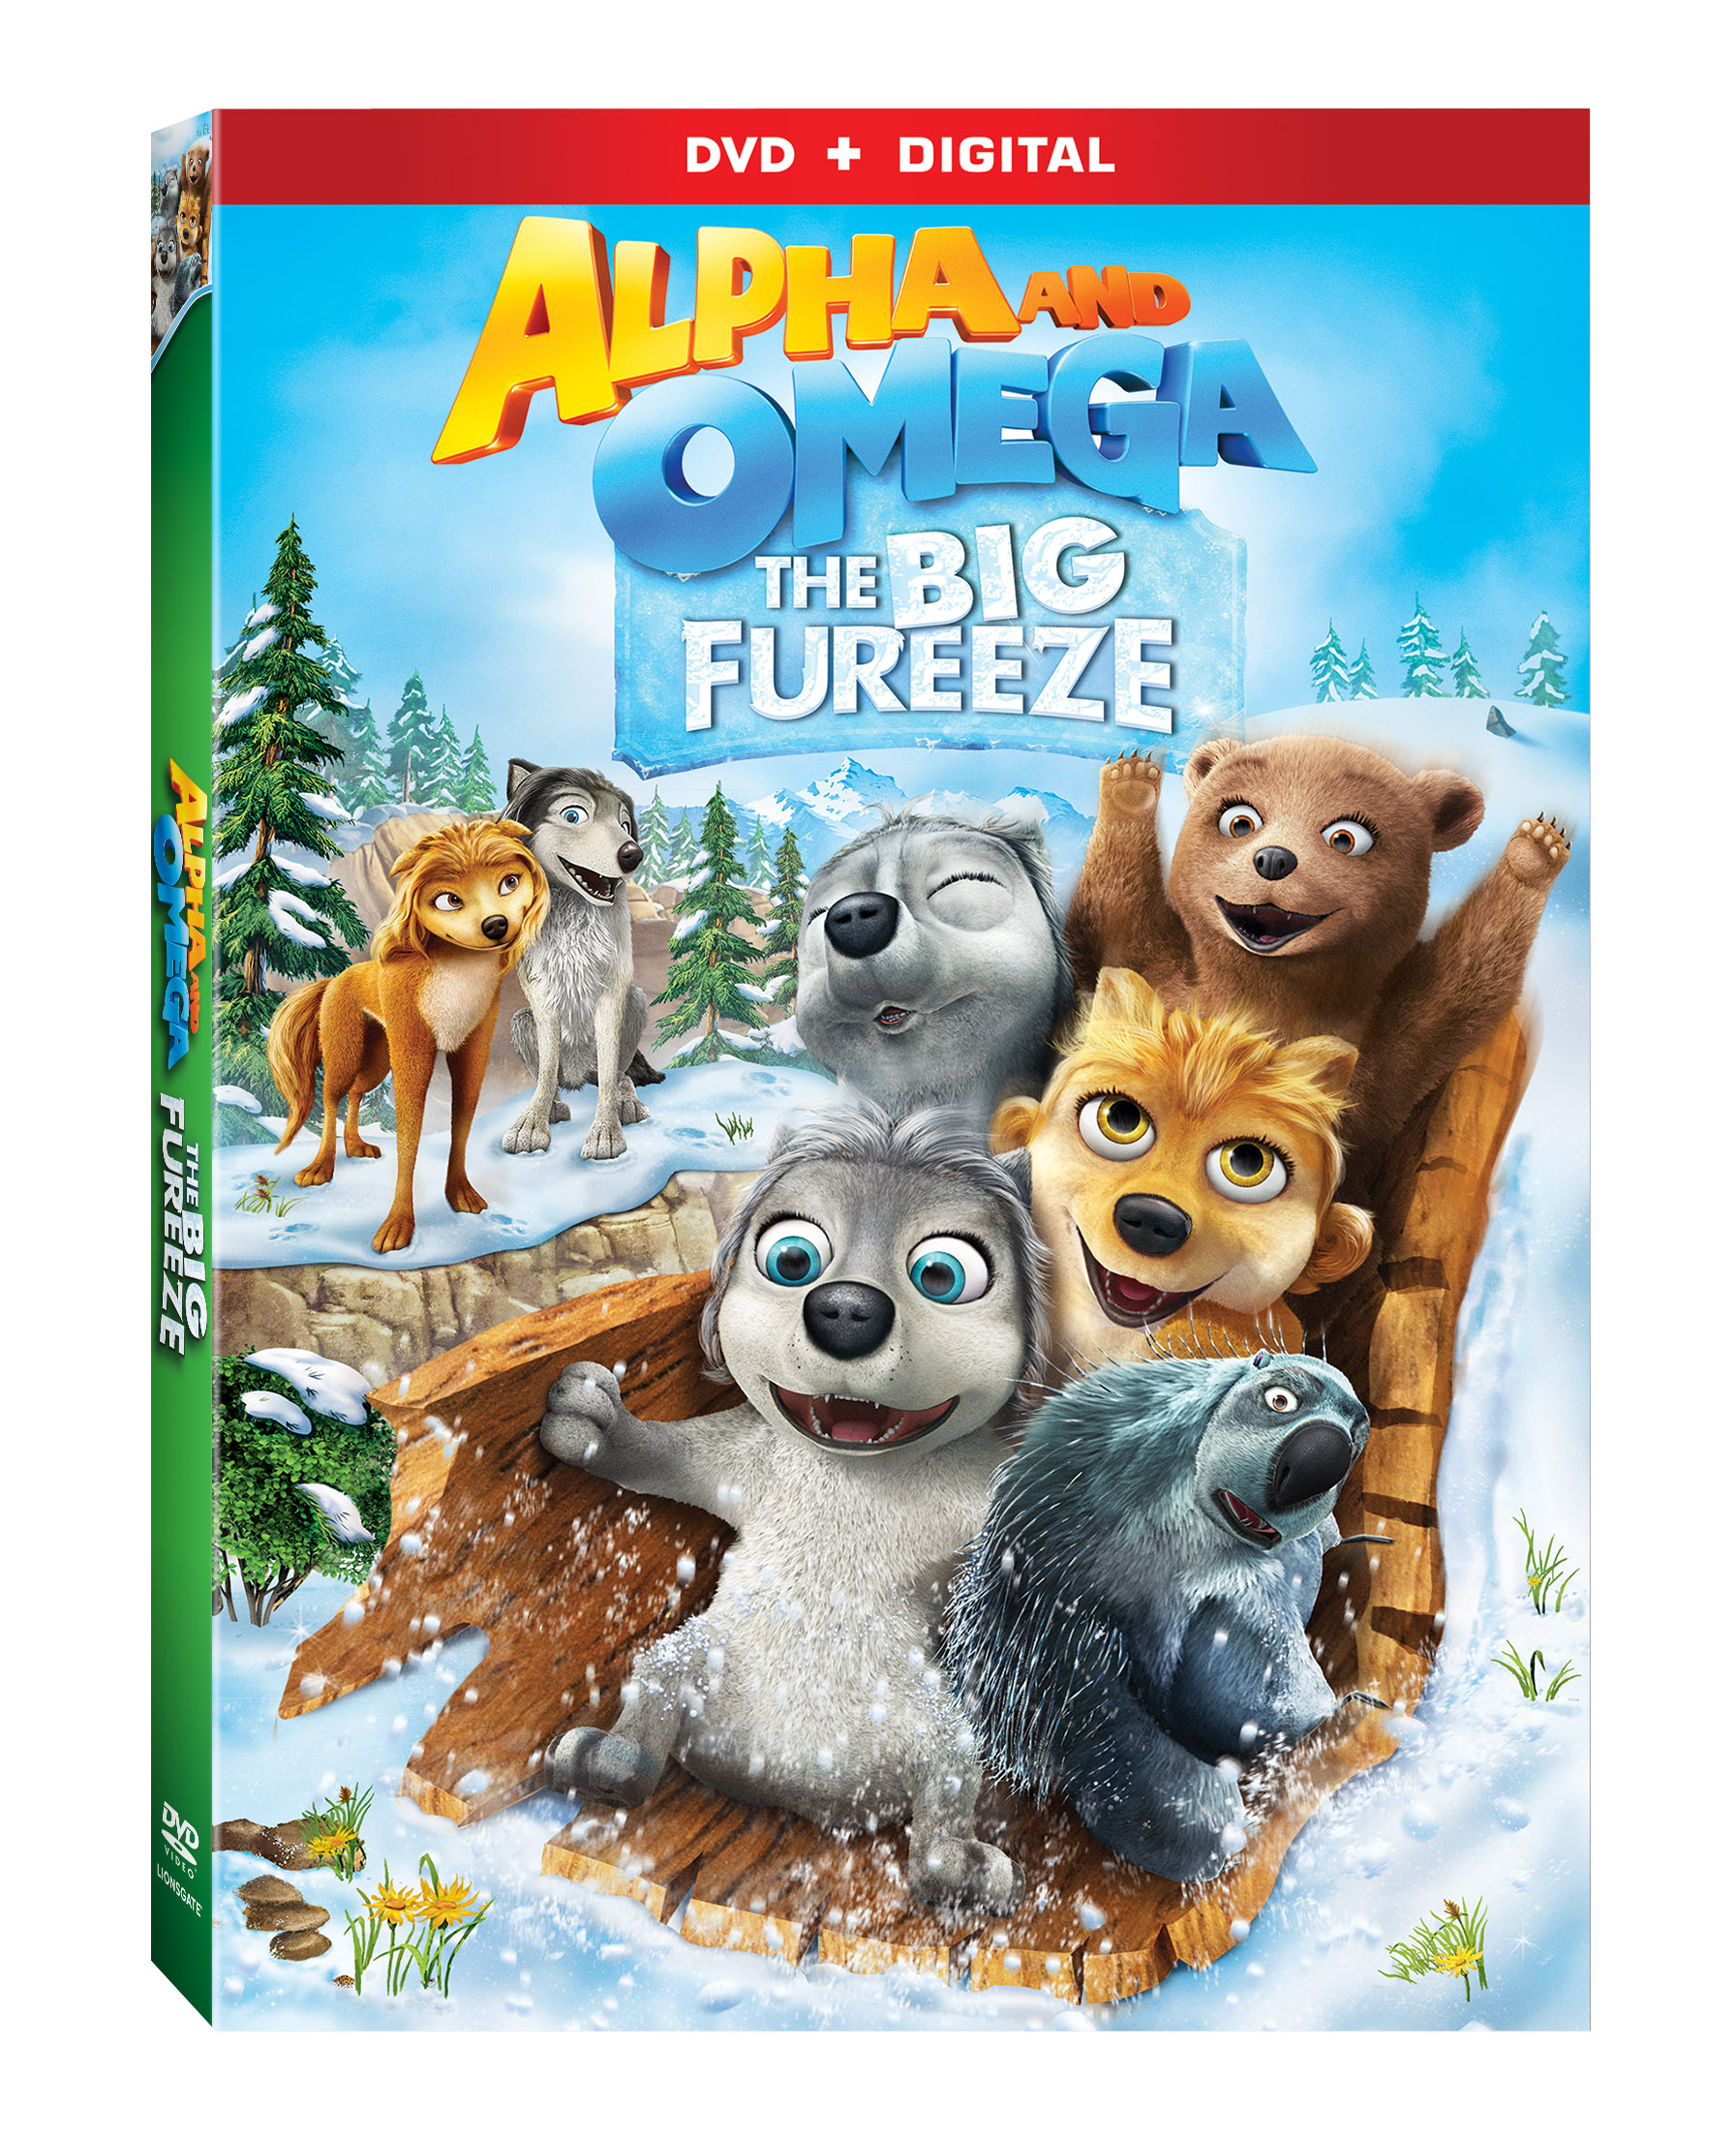 ALPHA AND OMEGA: THE BIG FUREEZE Arrives on DVD & Digital HD November 8 -  